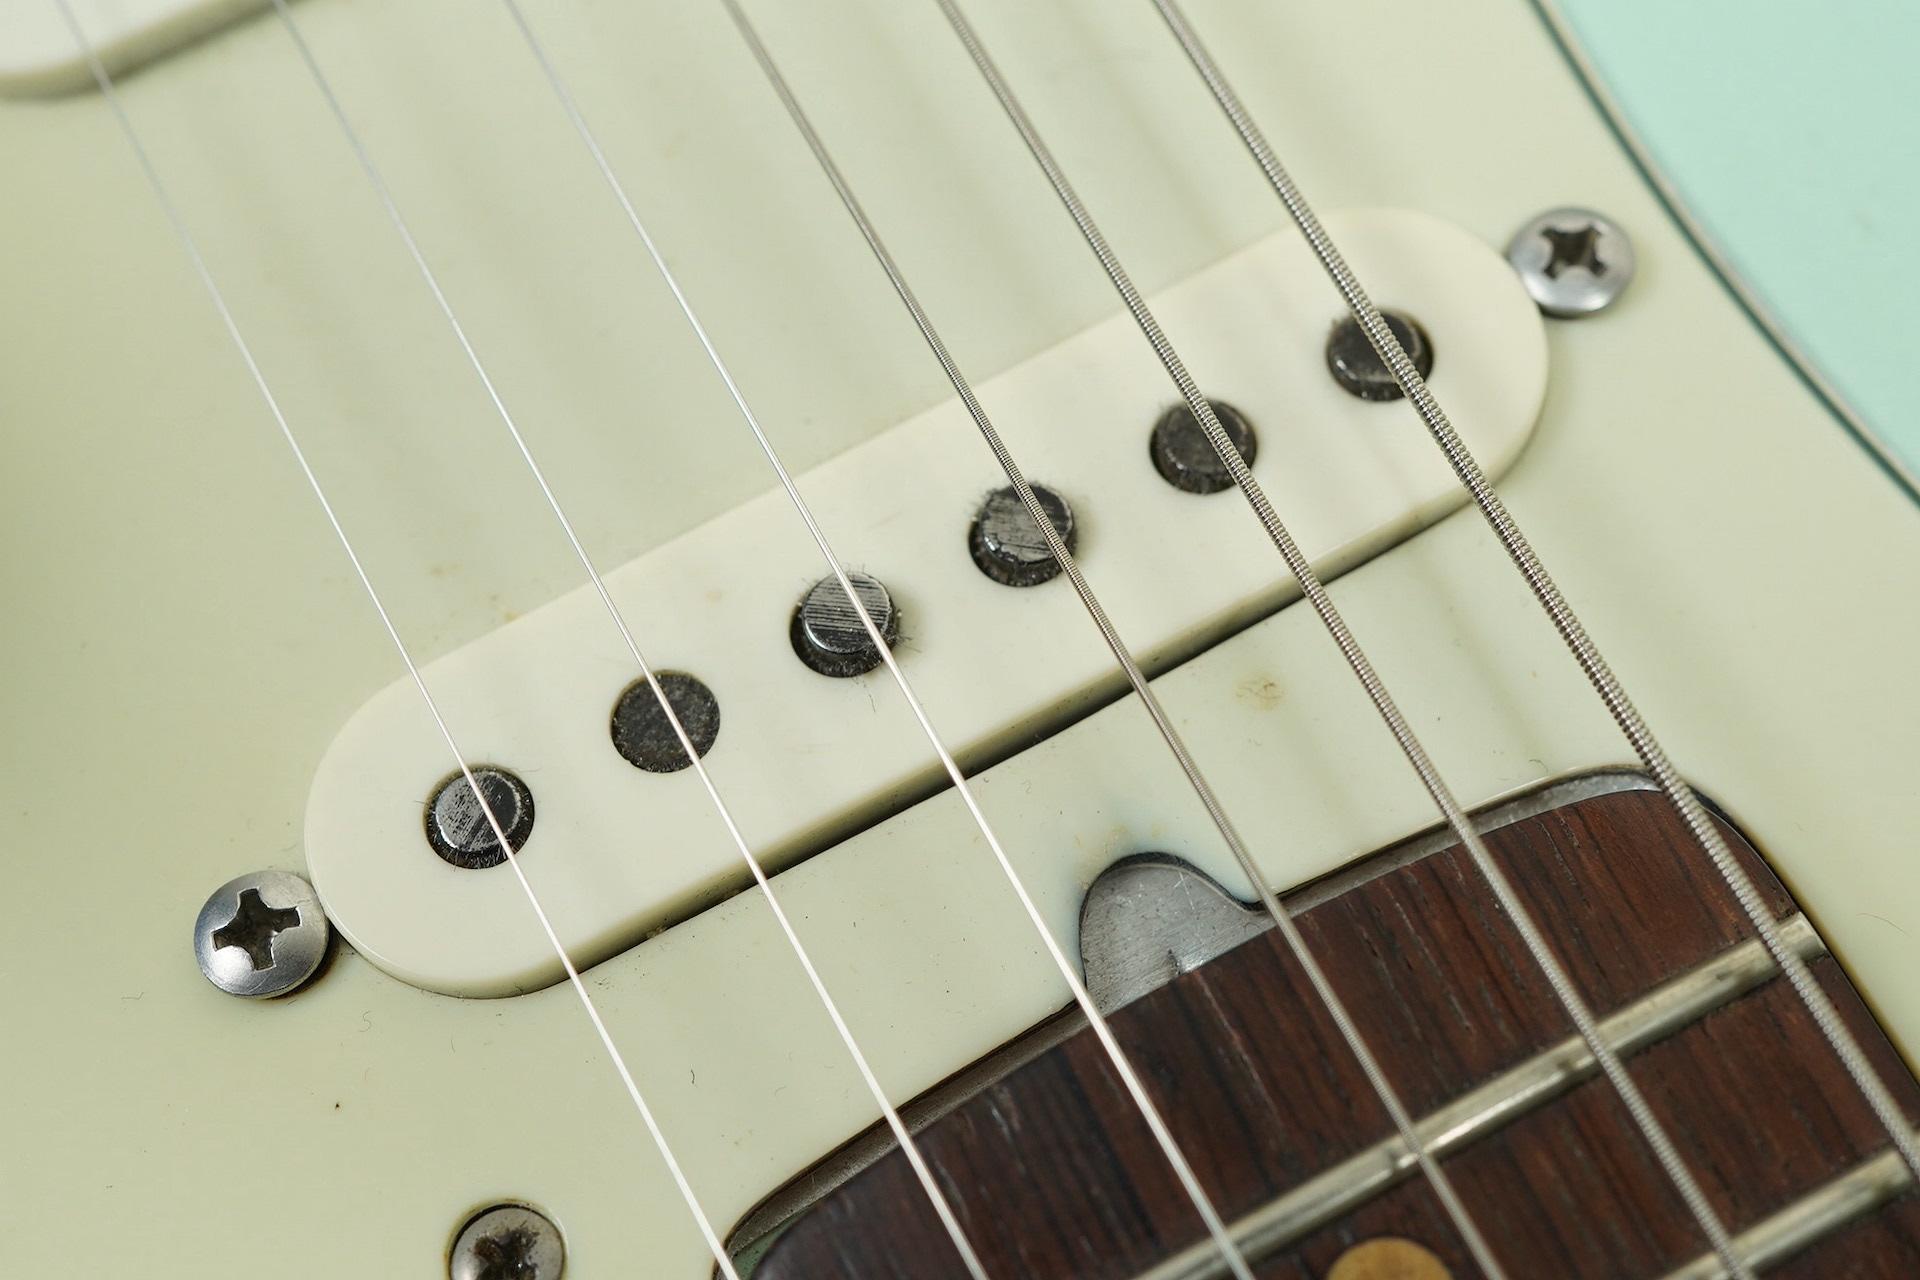 1964 Fender Stratocaster Sonic Blue refin